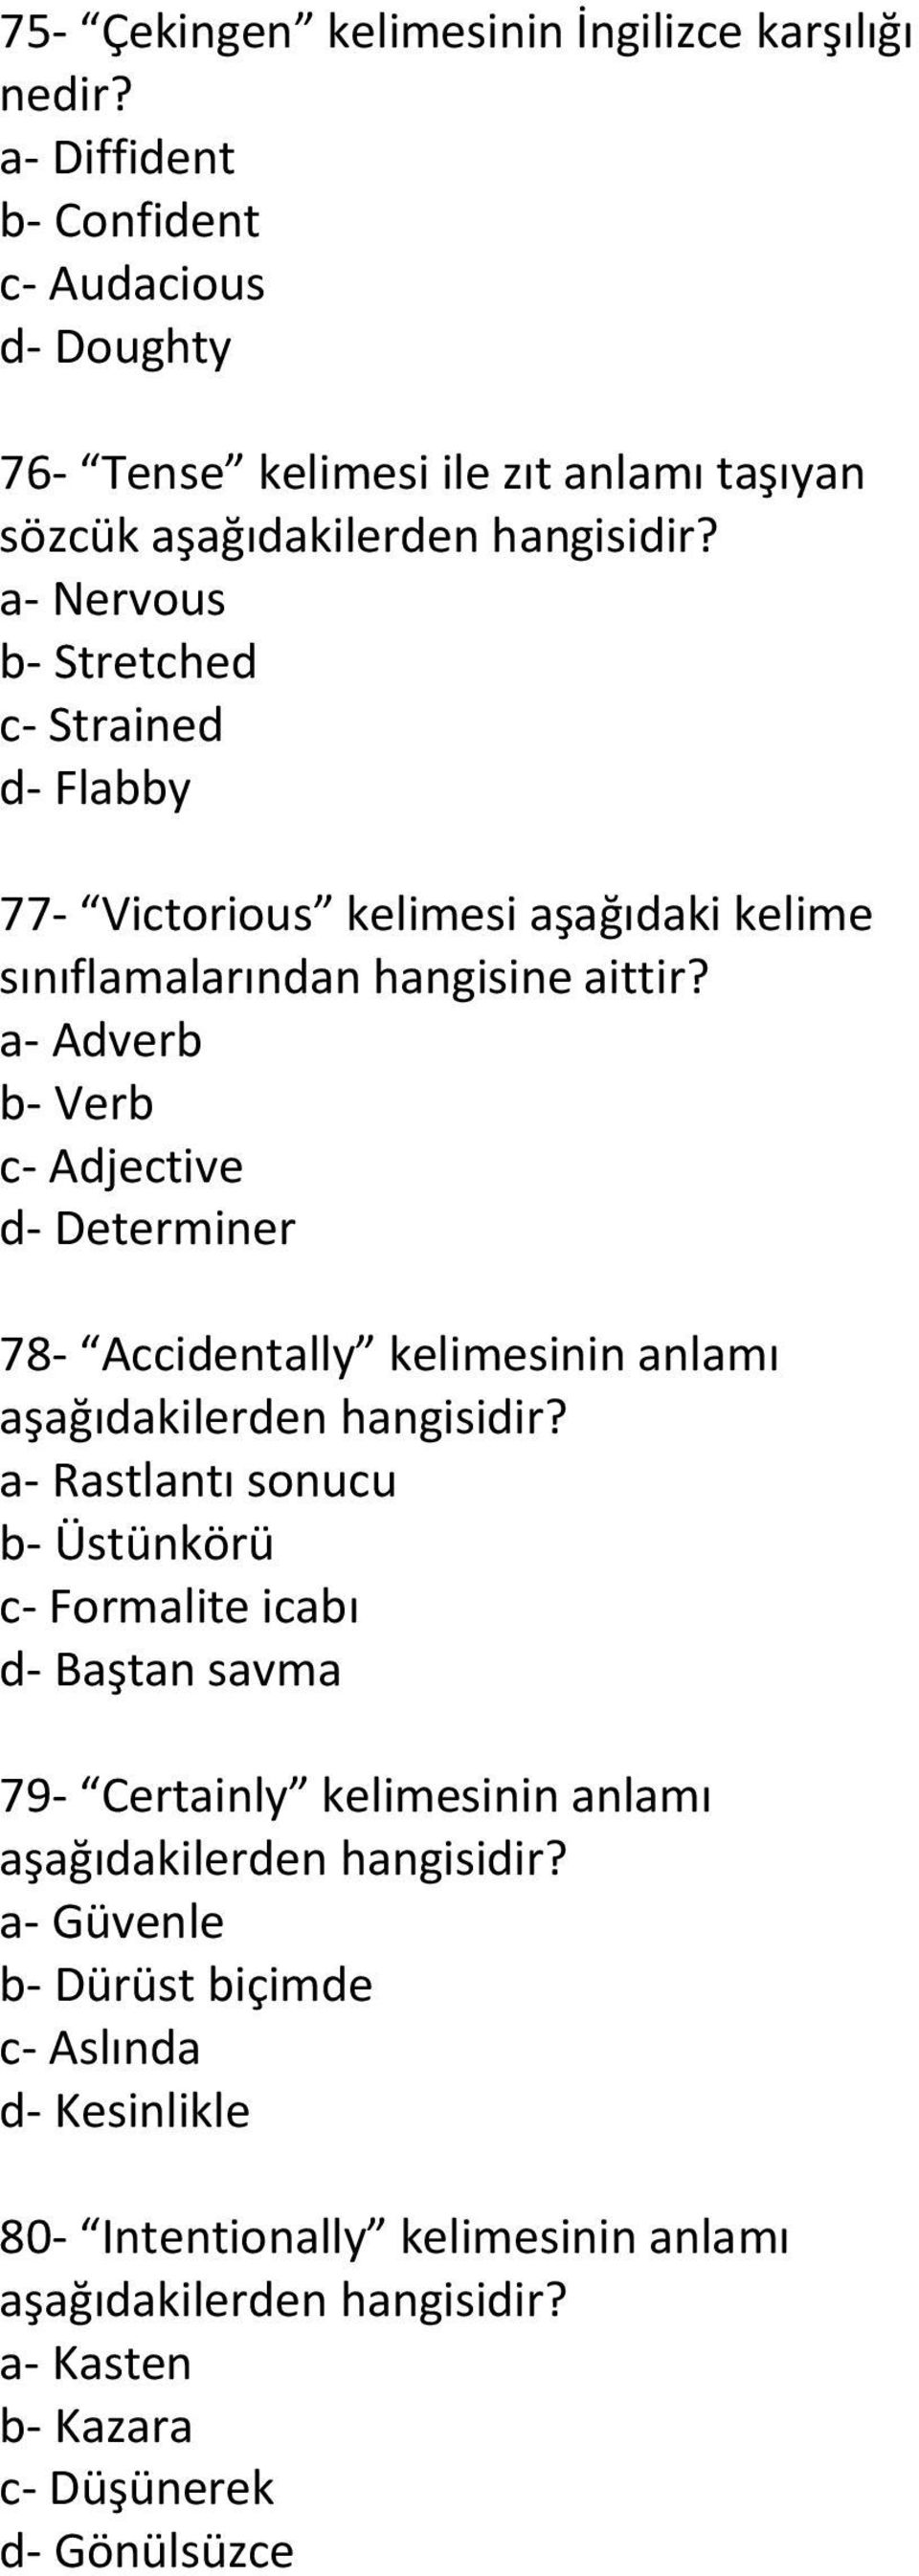 Victorious kelimesi aşağıdaki kelime sınıflamalarından hangisine aittir?